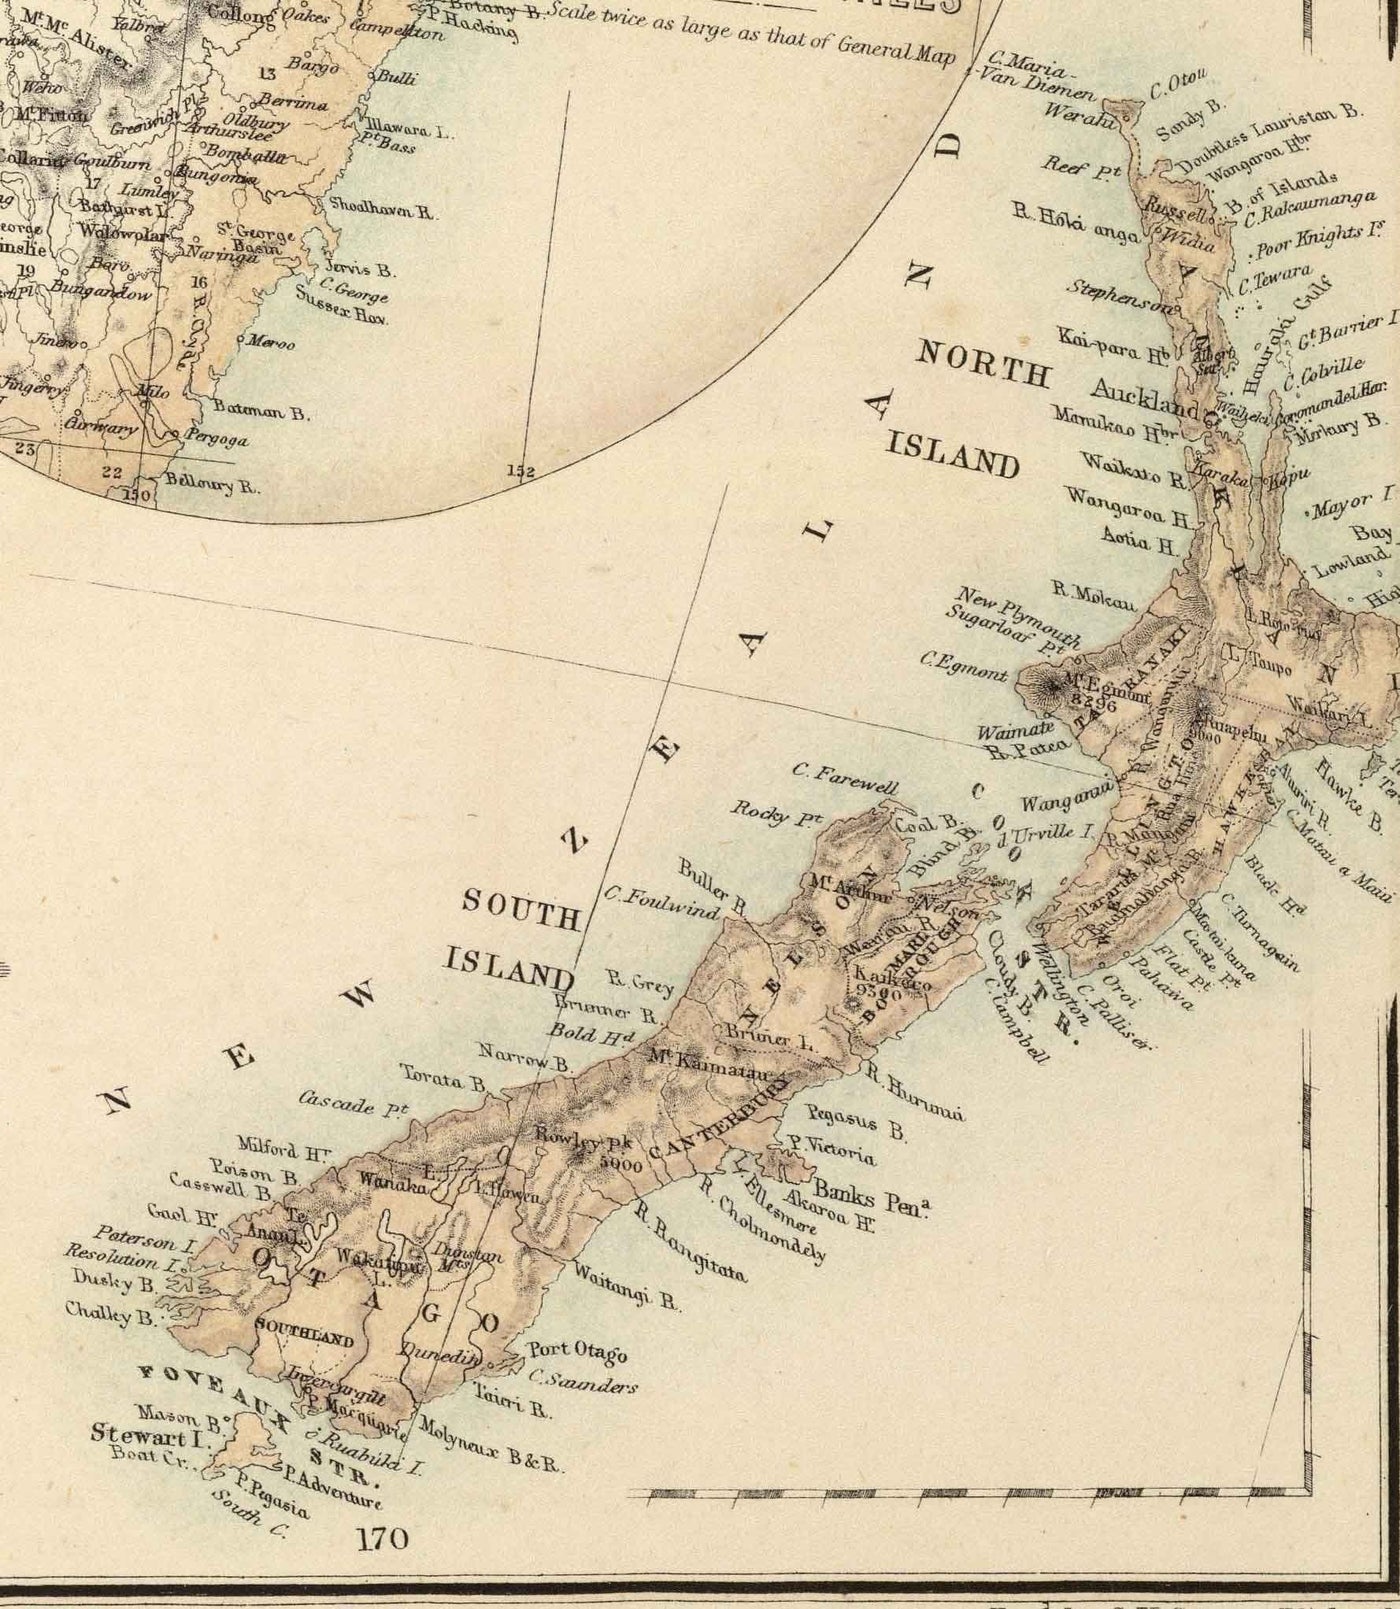 Ancienne carte d'Australie et de Nouvelle-Zélande, 1872 par Fullarton - Tasmanie, Terre de Van Diemens, Sydney, Auckland, Victoria, NSW